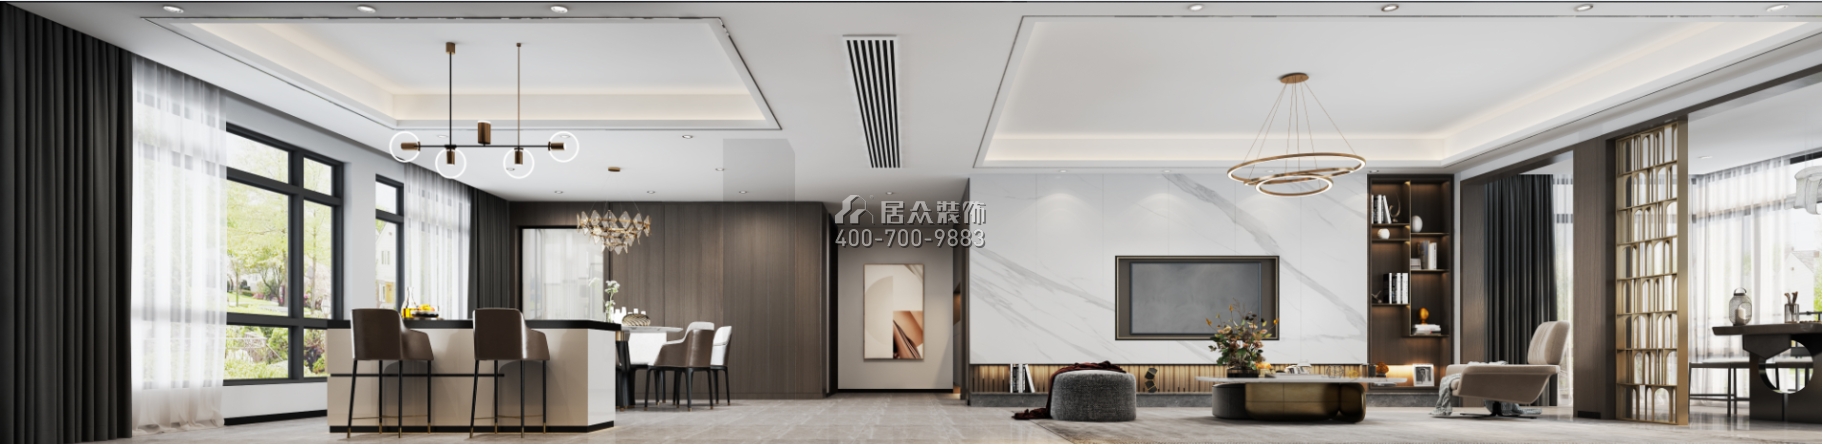 華發新城200平方米現代簡約風格平層戶型客餐廳一體裝修效果圖